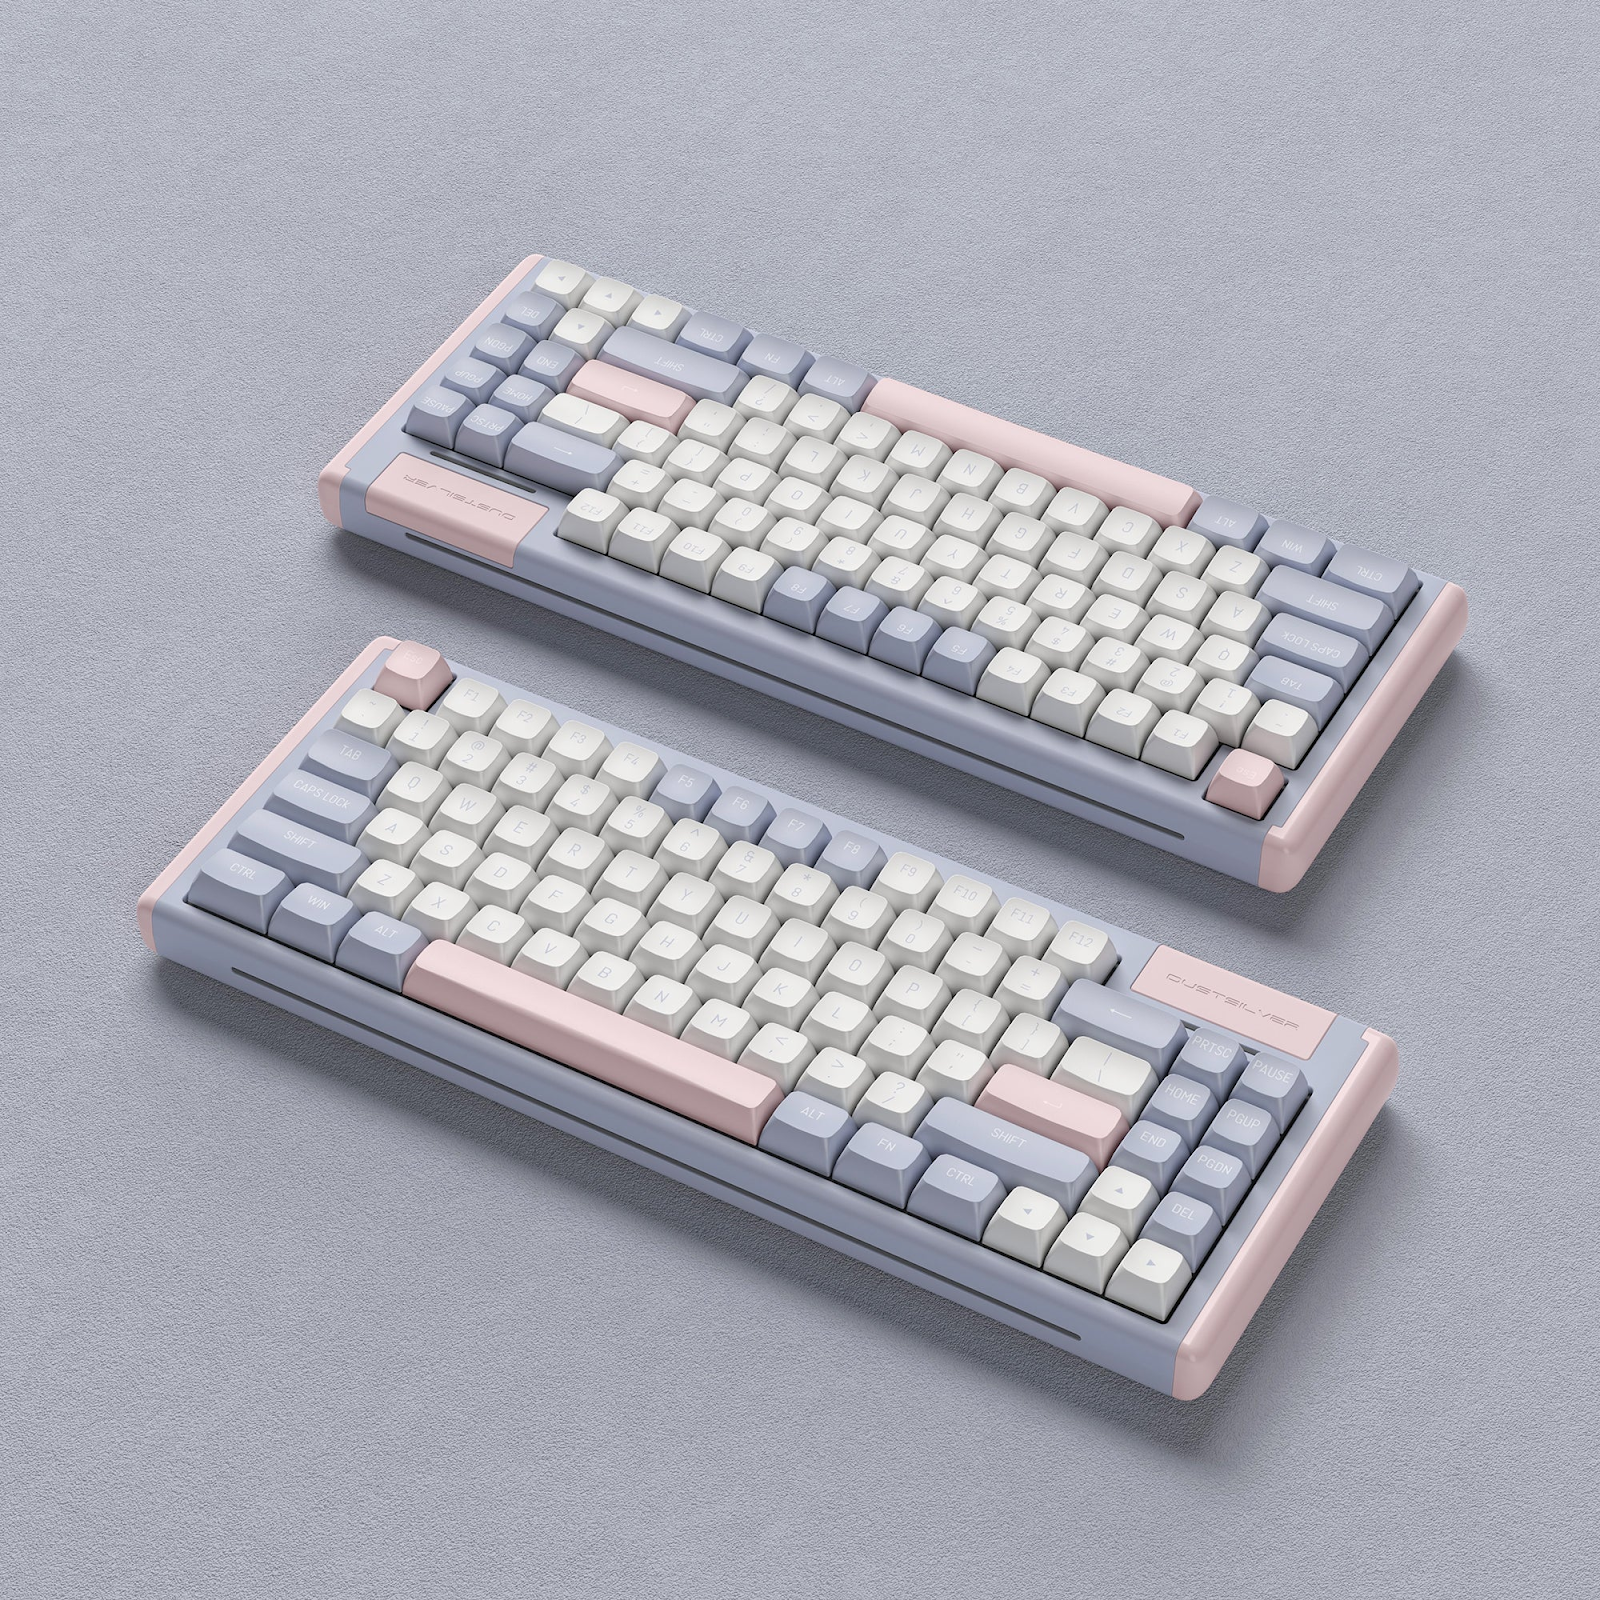 Kawaii Keyboards